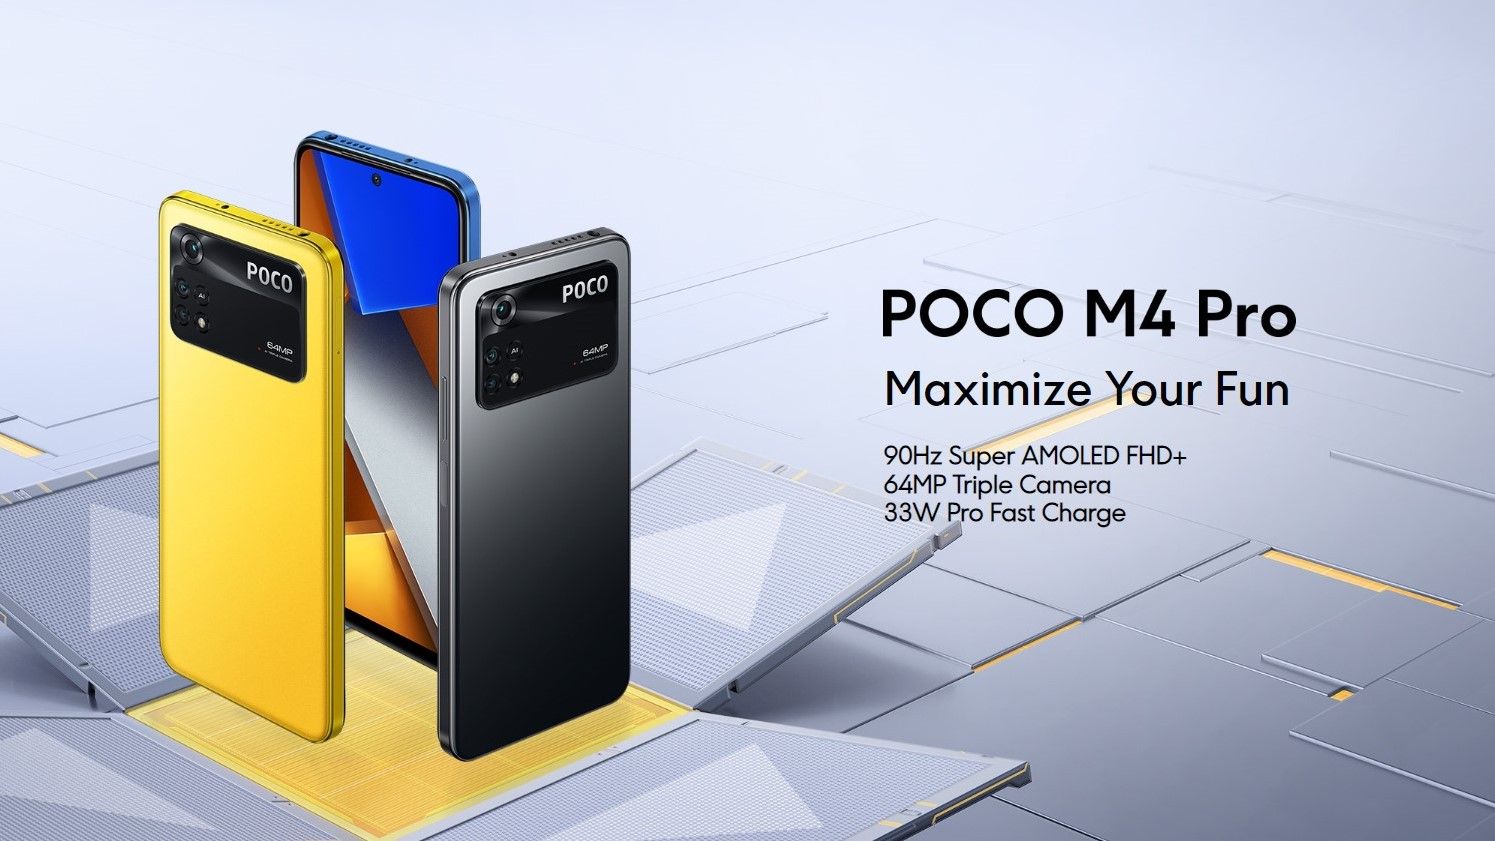 Poco M4 Pro, smartphone dengan fitur lengkap serta harga yang terjangkau